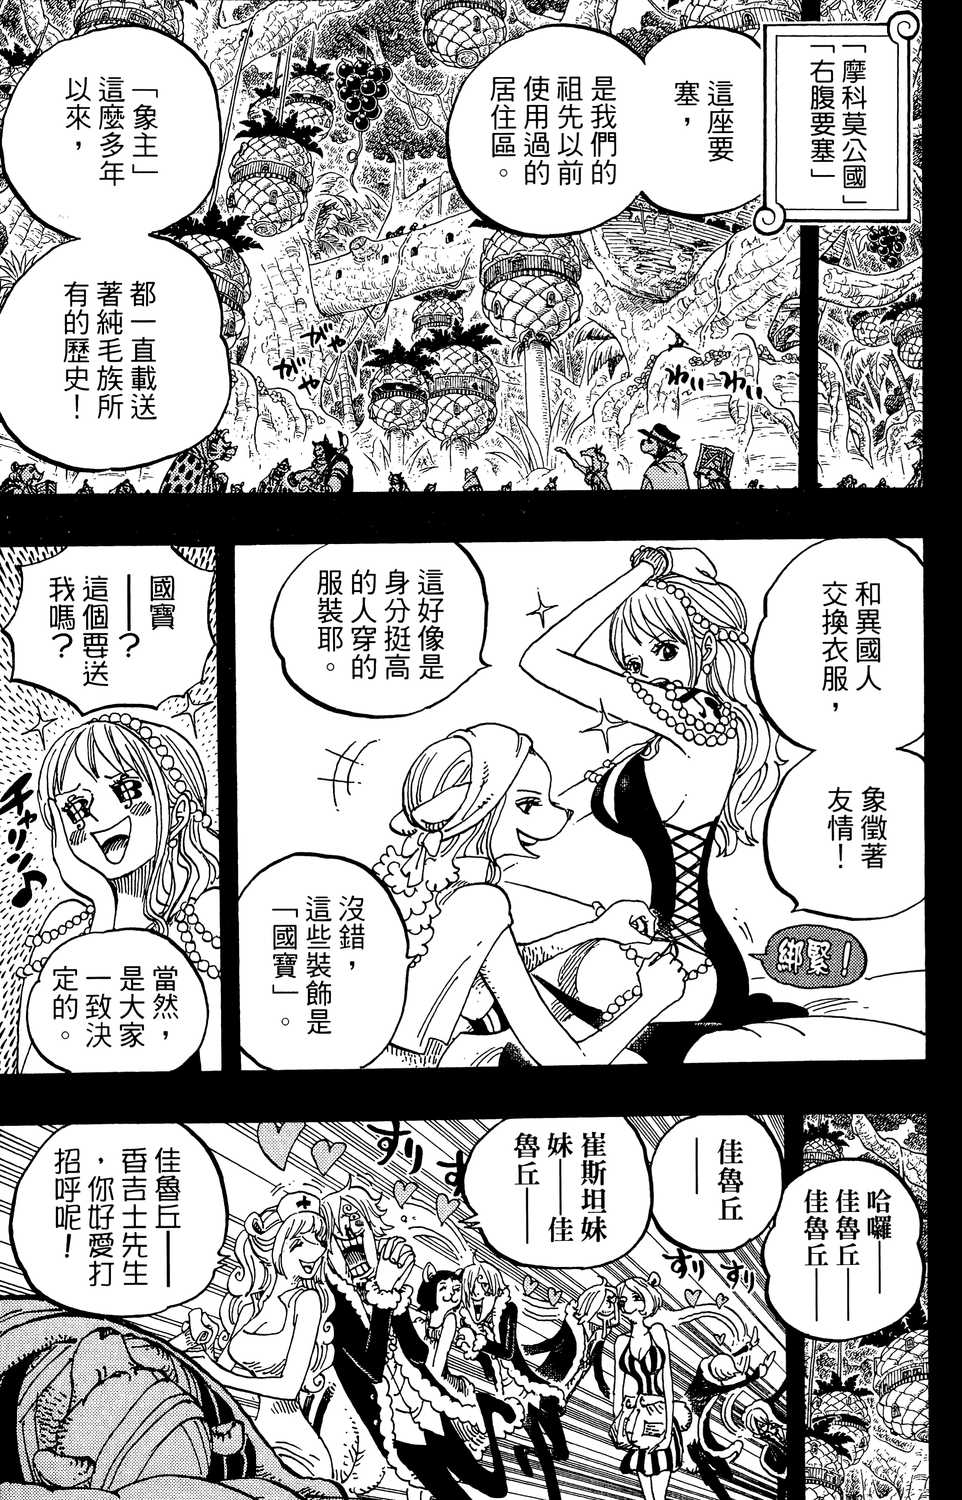 One Piece 海贼王 航海王 漫画东立版53 81 第81集 漫画db